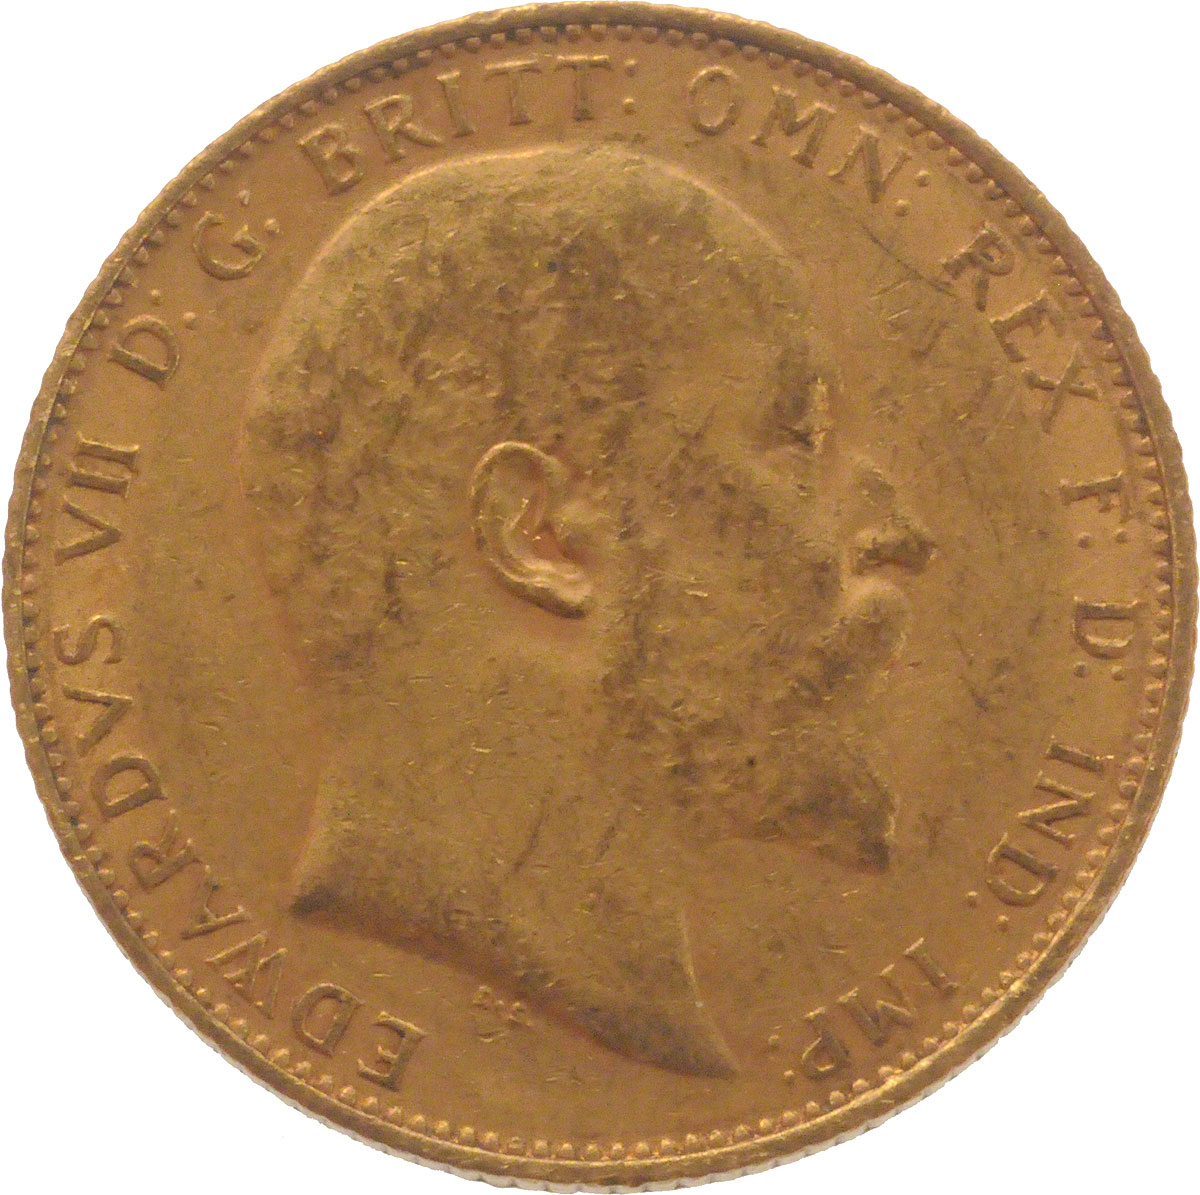 1909 Εδουάρδος Ζ’ (Νομισματοκοπείο Μελβούρνης)